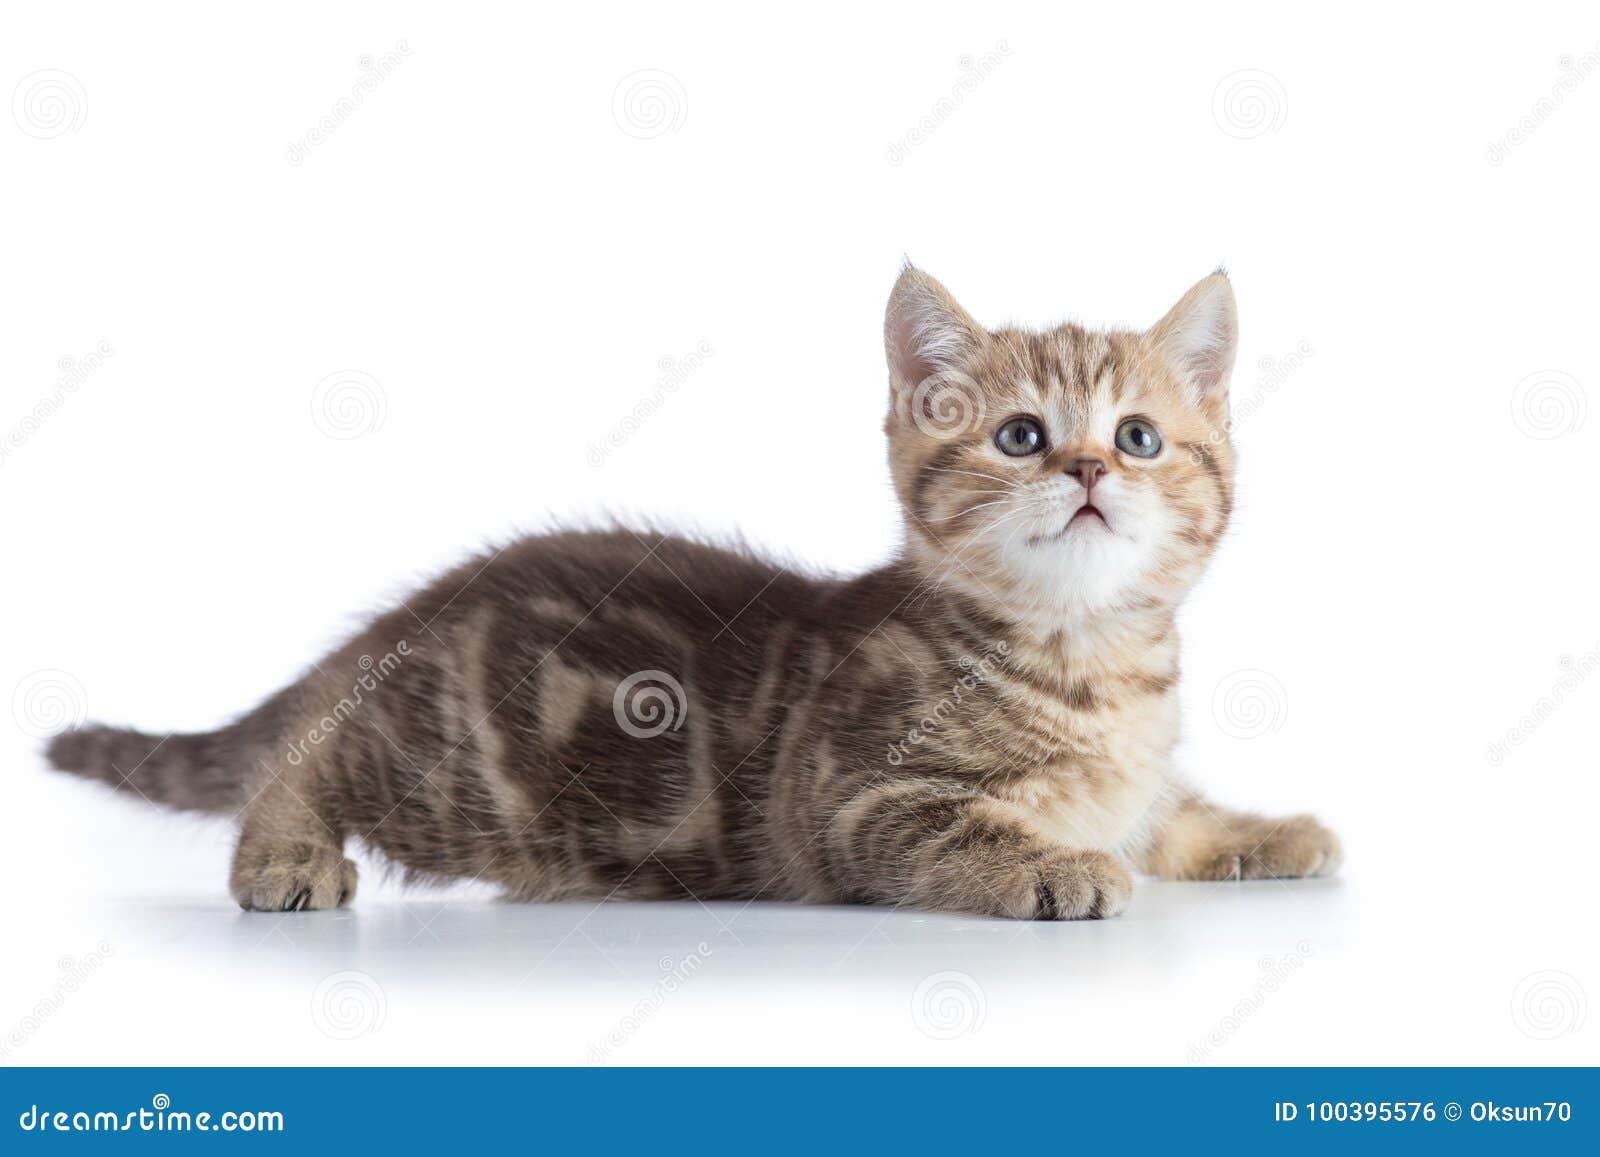 Gato malhado fofo ou animal de desenho de gatinho